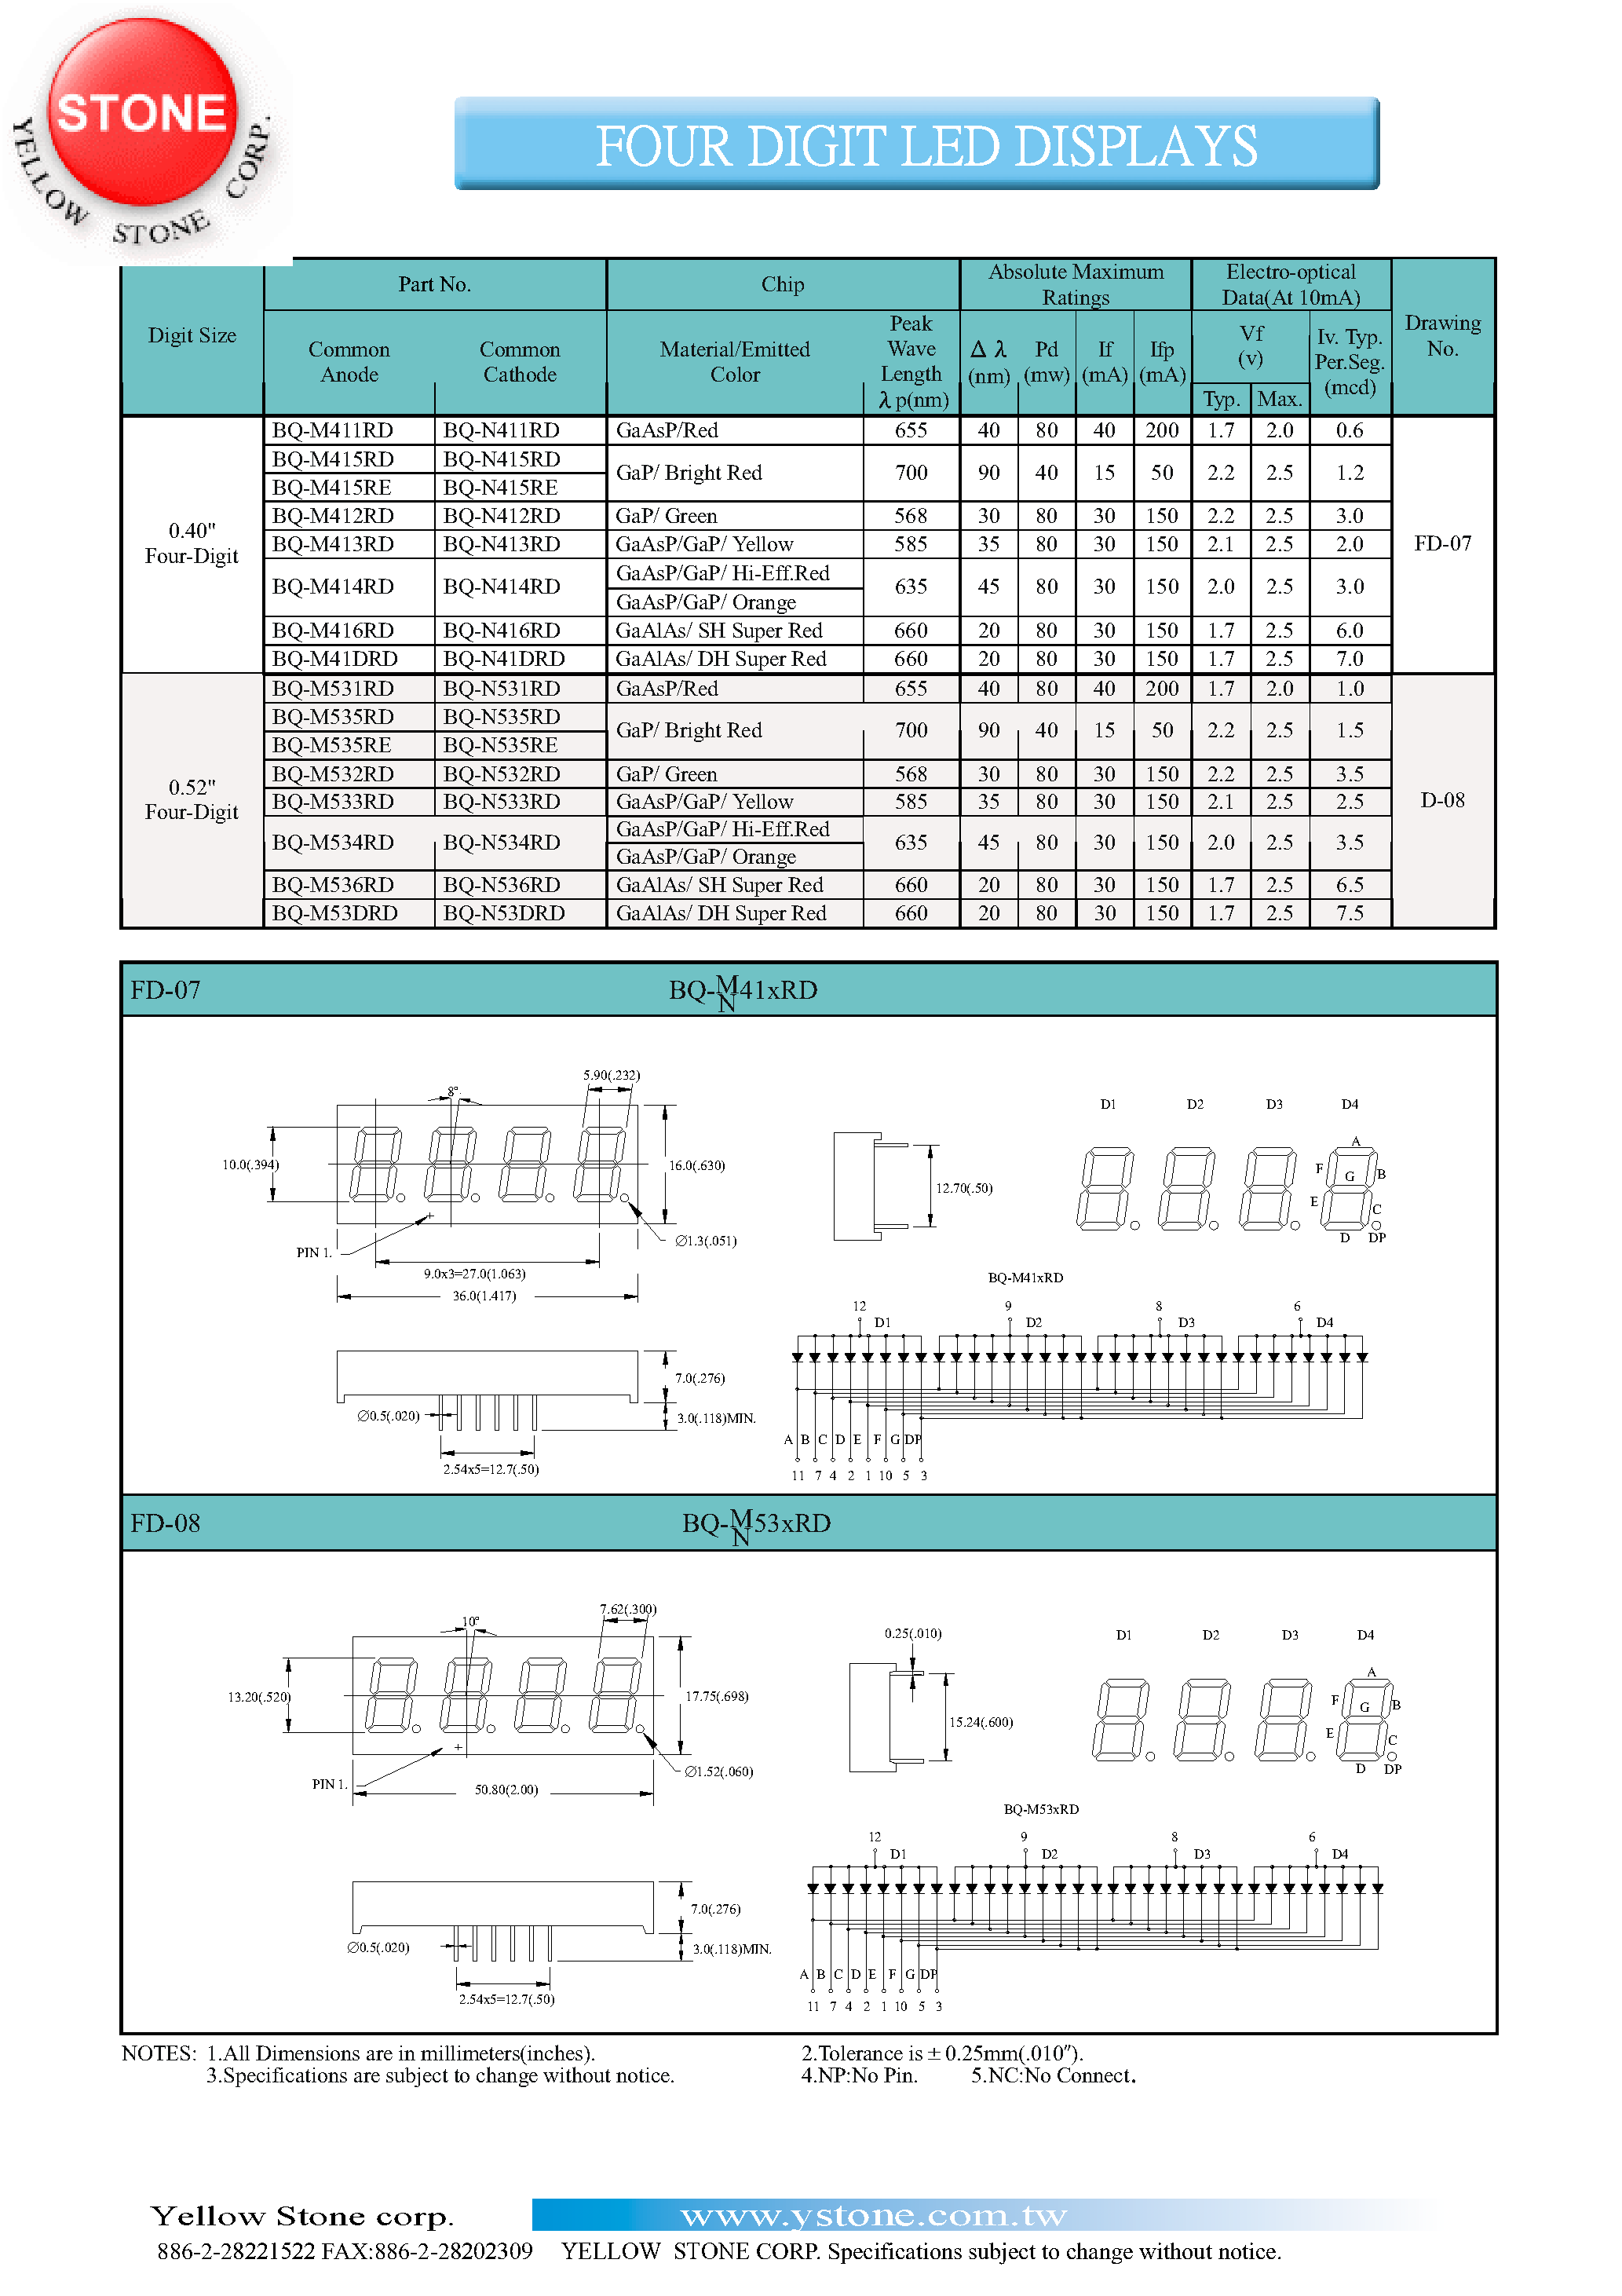 Datasheet BQ-M41DRD - FOUR DIGIT LED DISPLAYS page 1